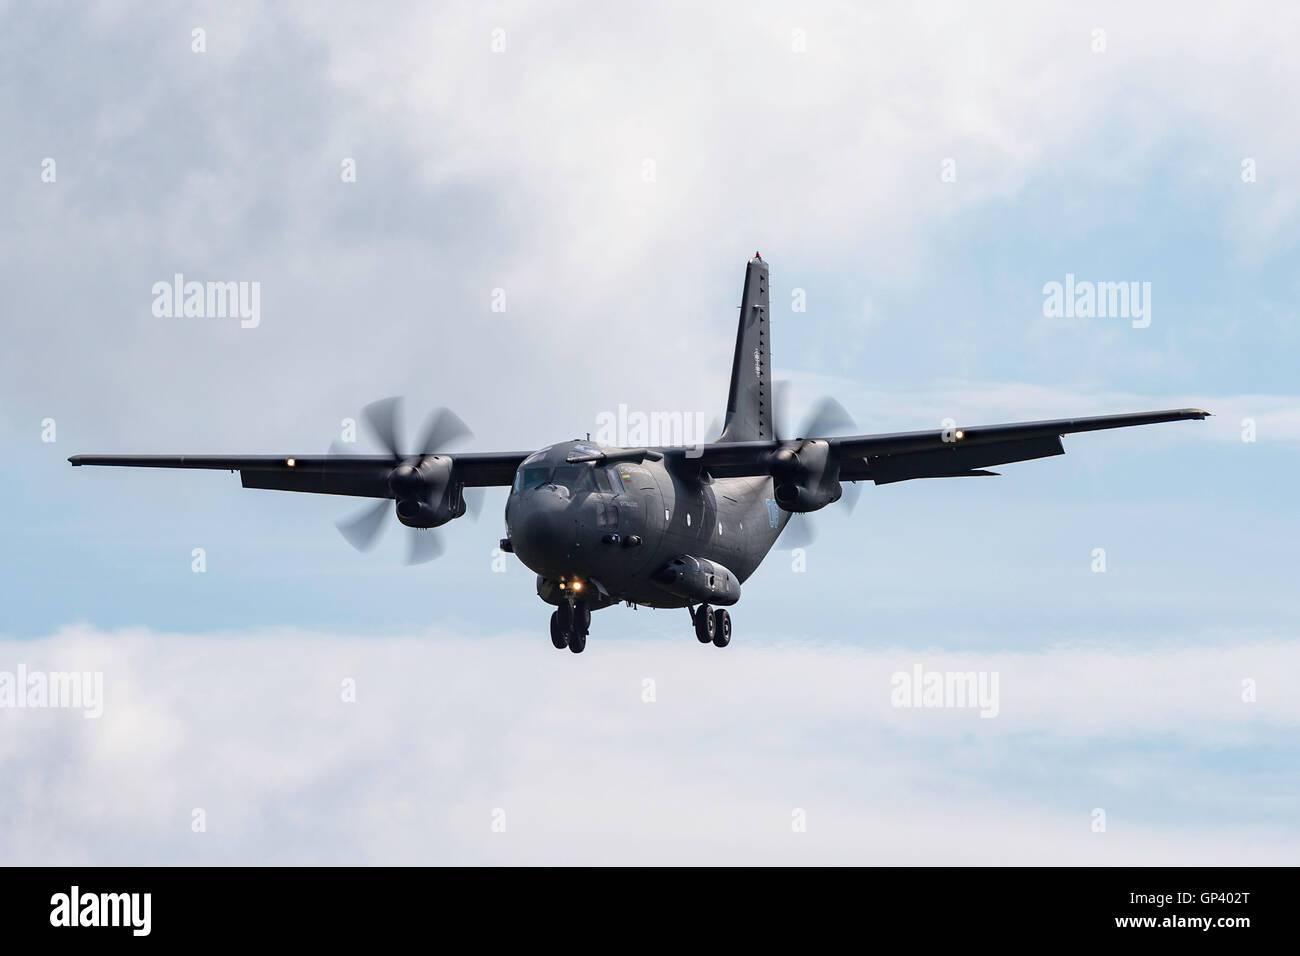 L'Armée de l'air lituanienne Lietuvos karines pajegos (ORO) Alenia C-27J Spartan d'avions cargo militaires Banque D'Images